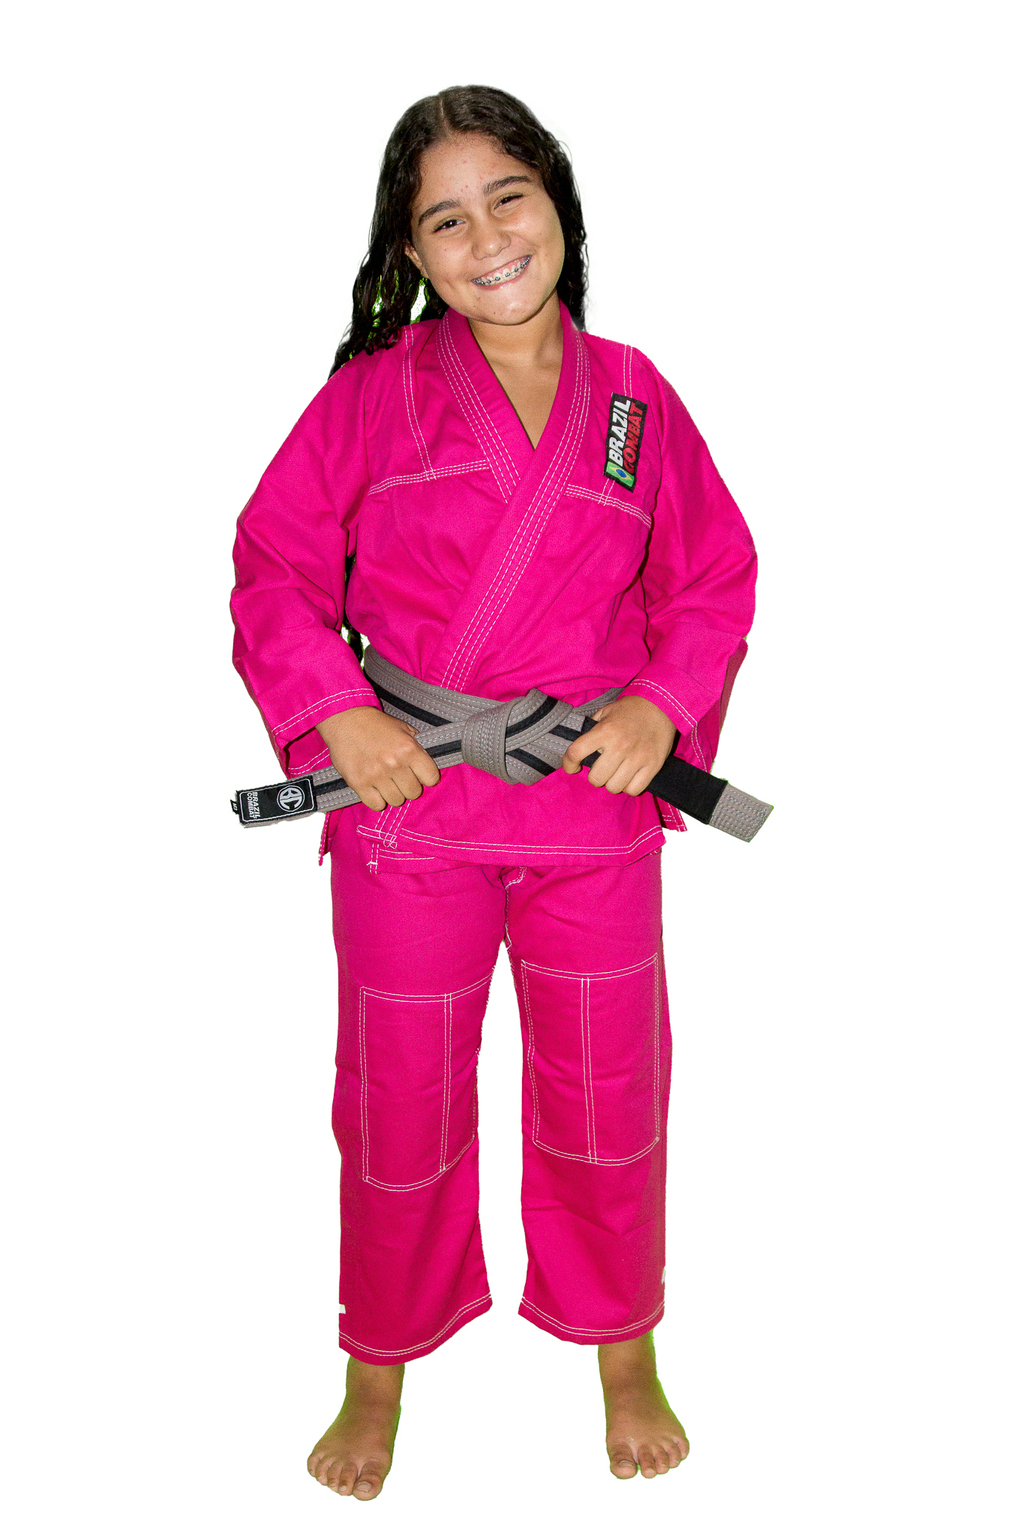 Kimono Infantil Reforçado Rosa - Brazil Combat